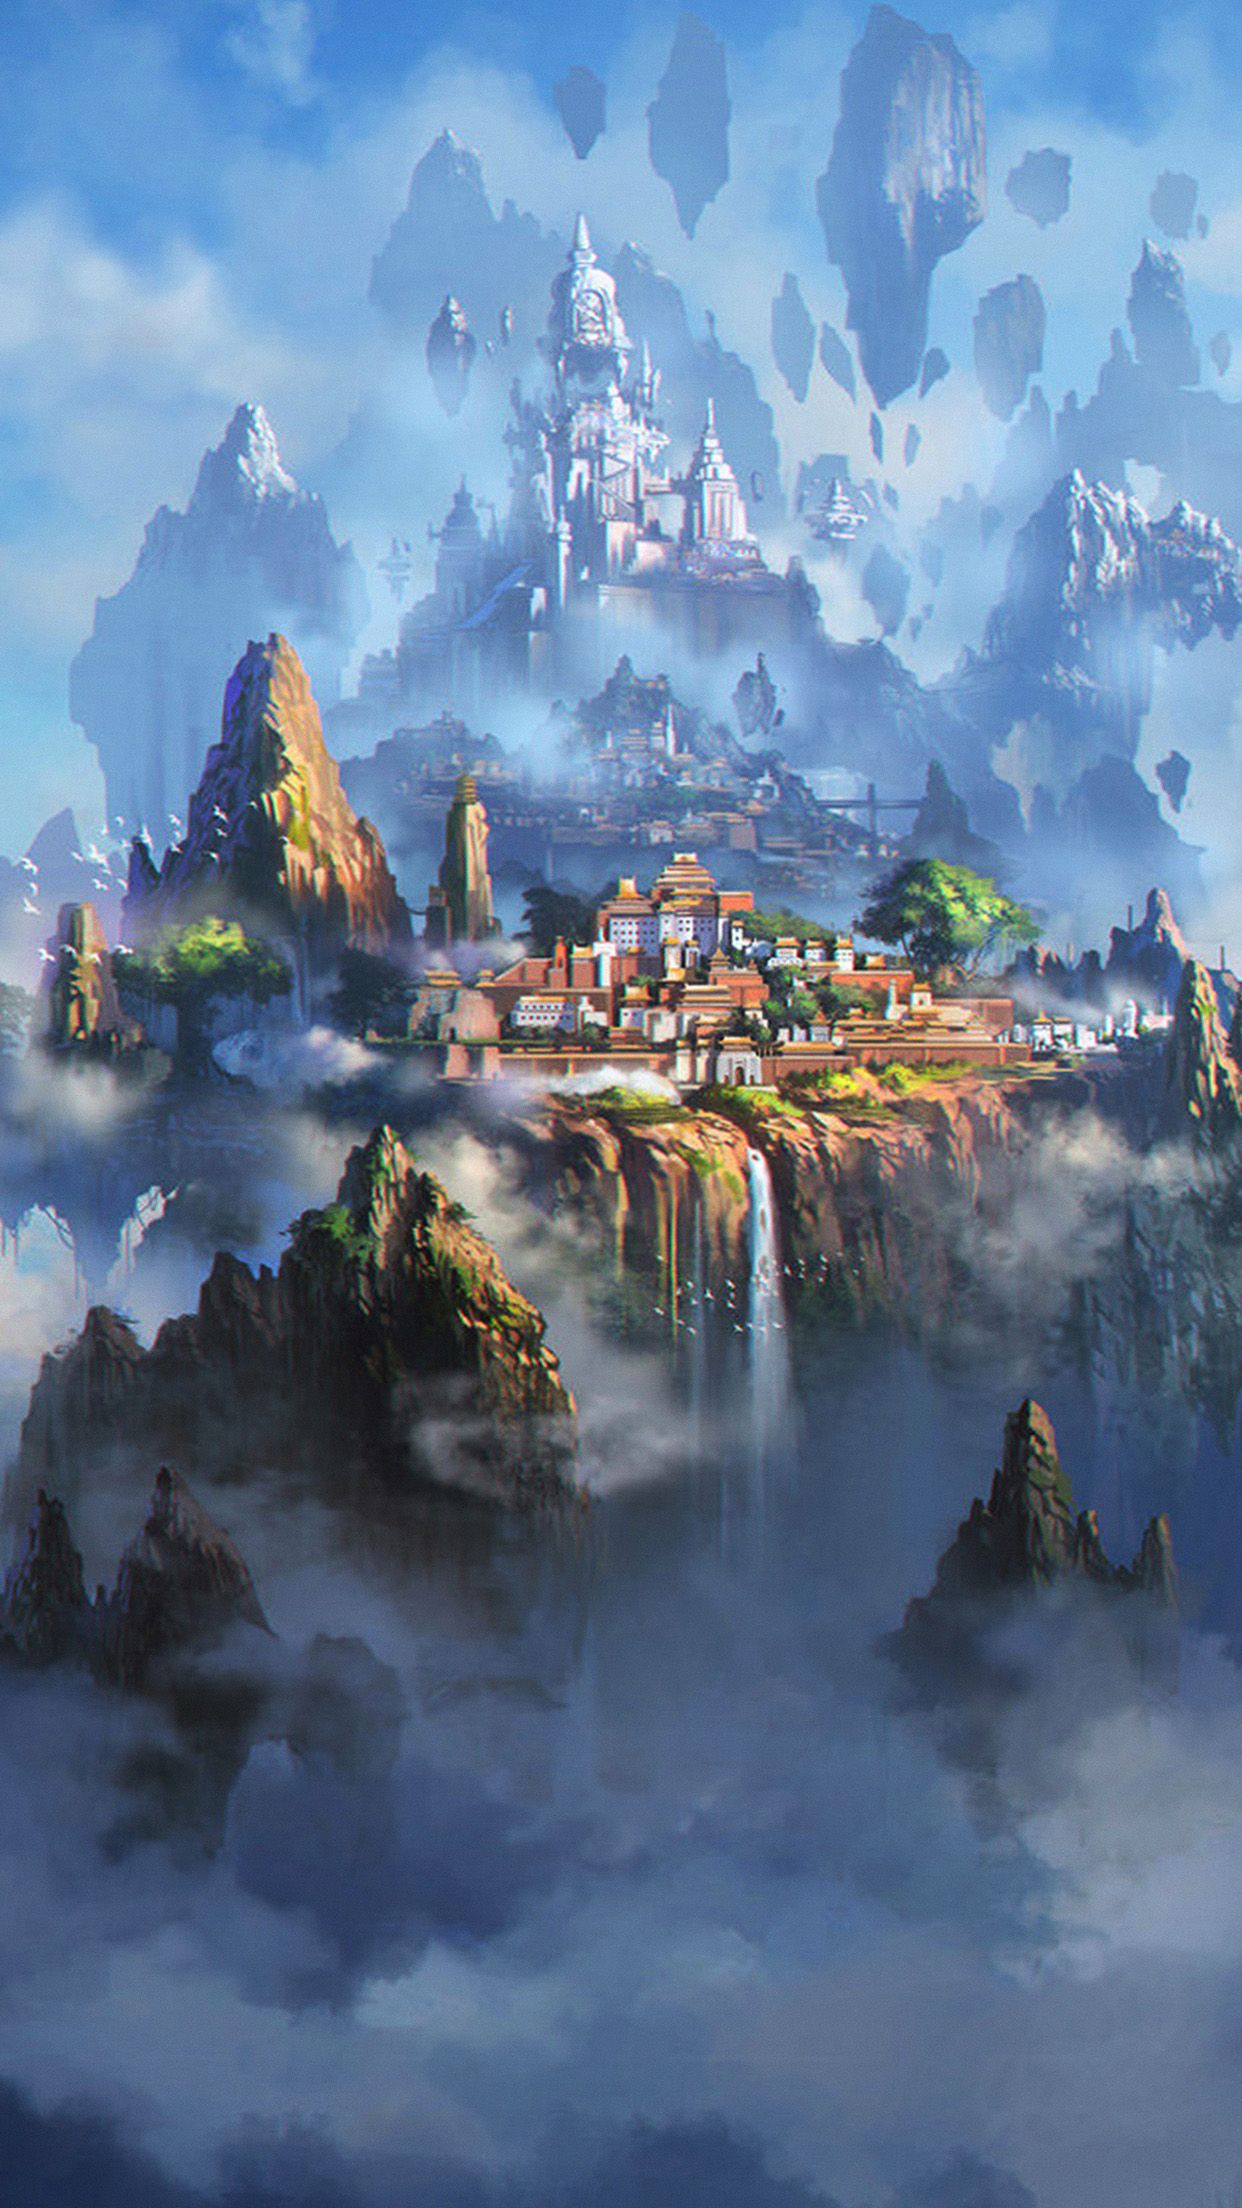 iPhone7 wallpaper. cloud town fantasy